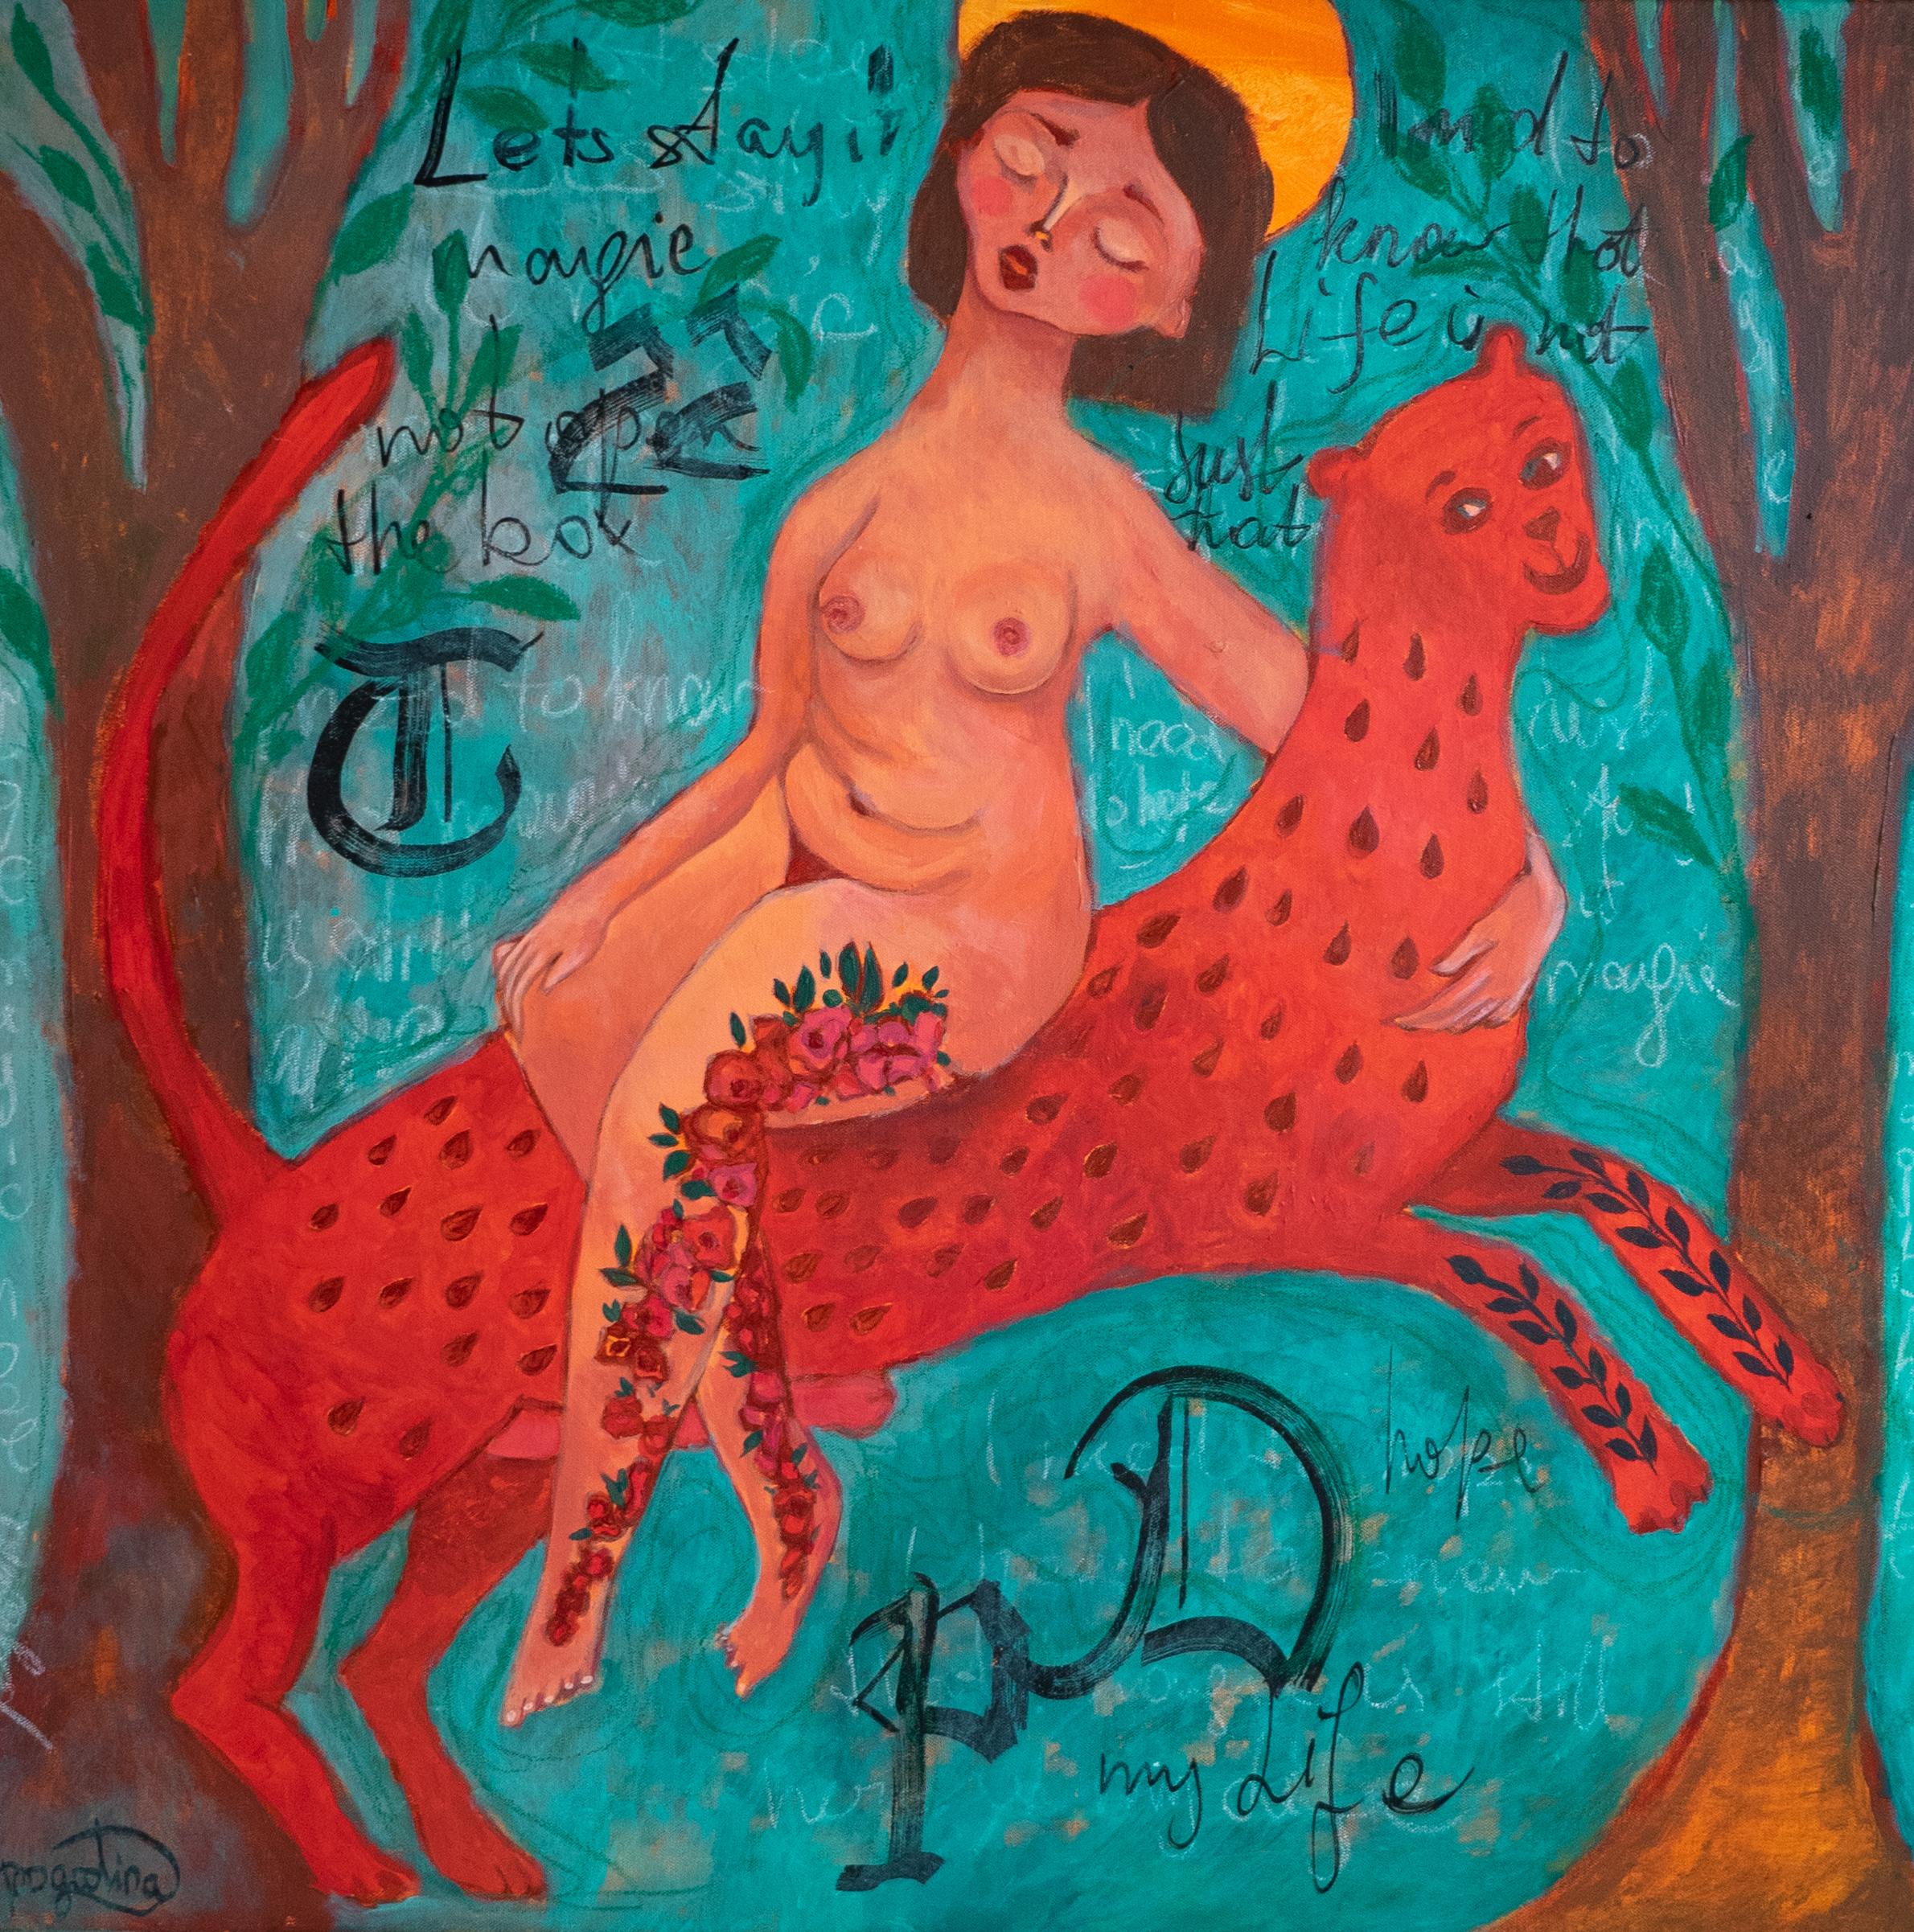 Ich habe keine Angst mehr, farbenfrohes, naives Kunstgemälde des ukrainischen Künstlers